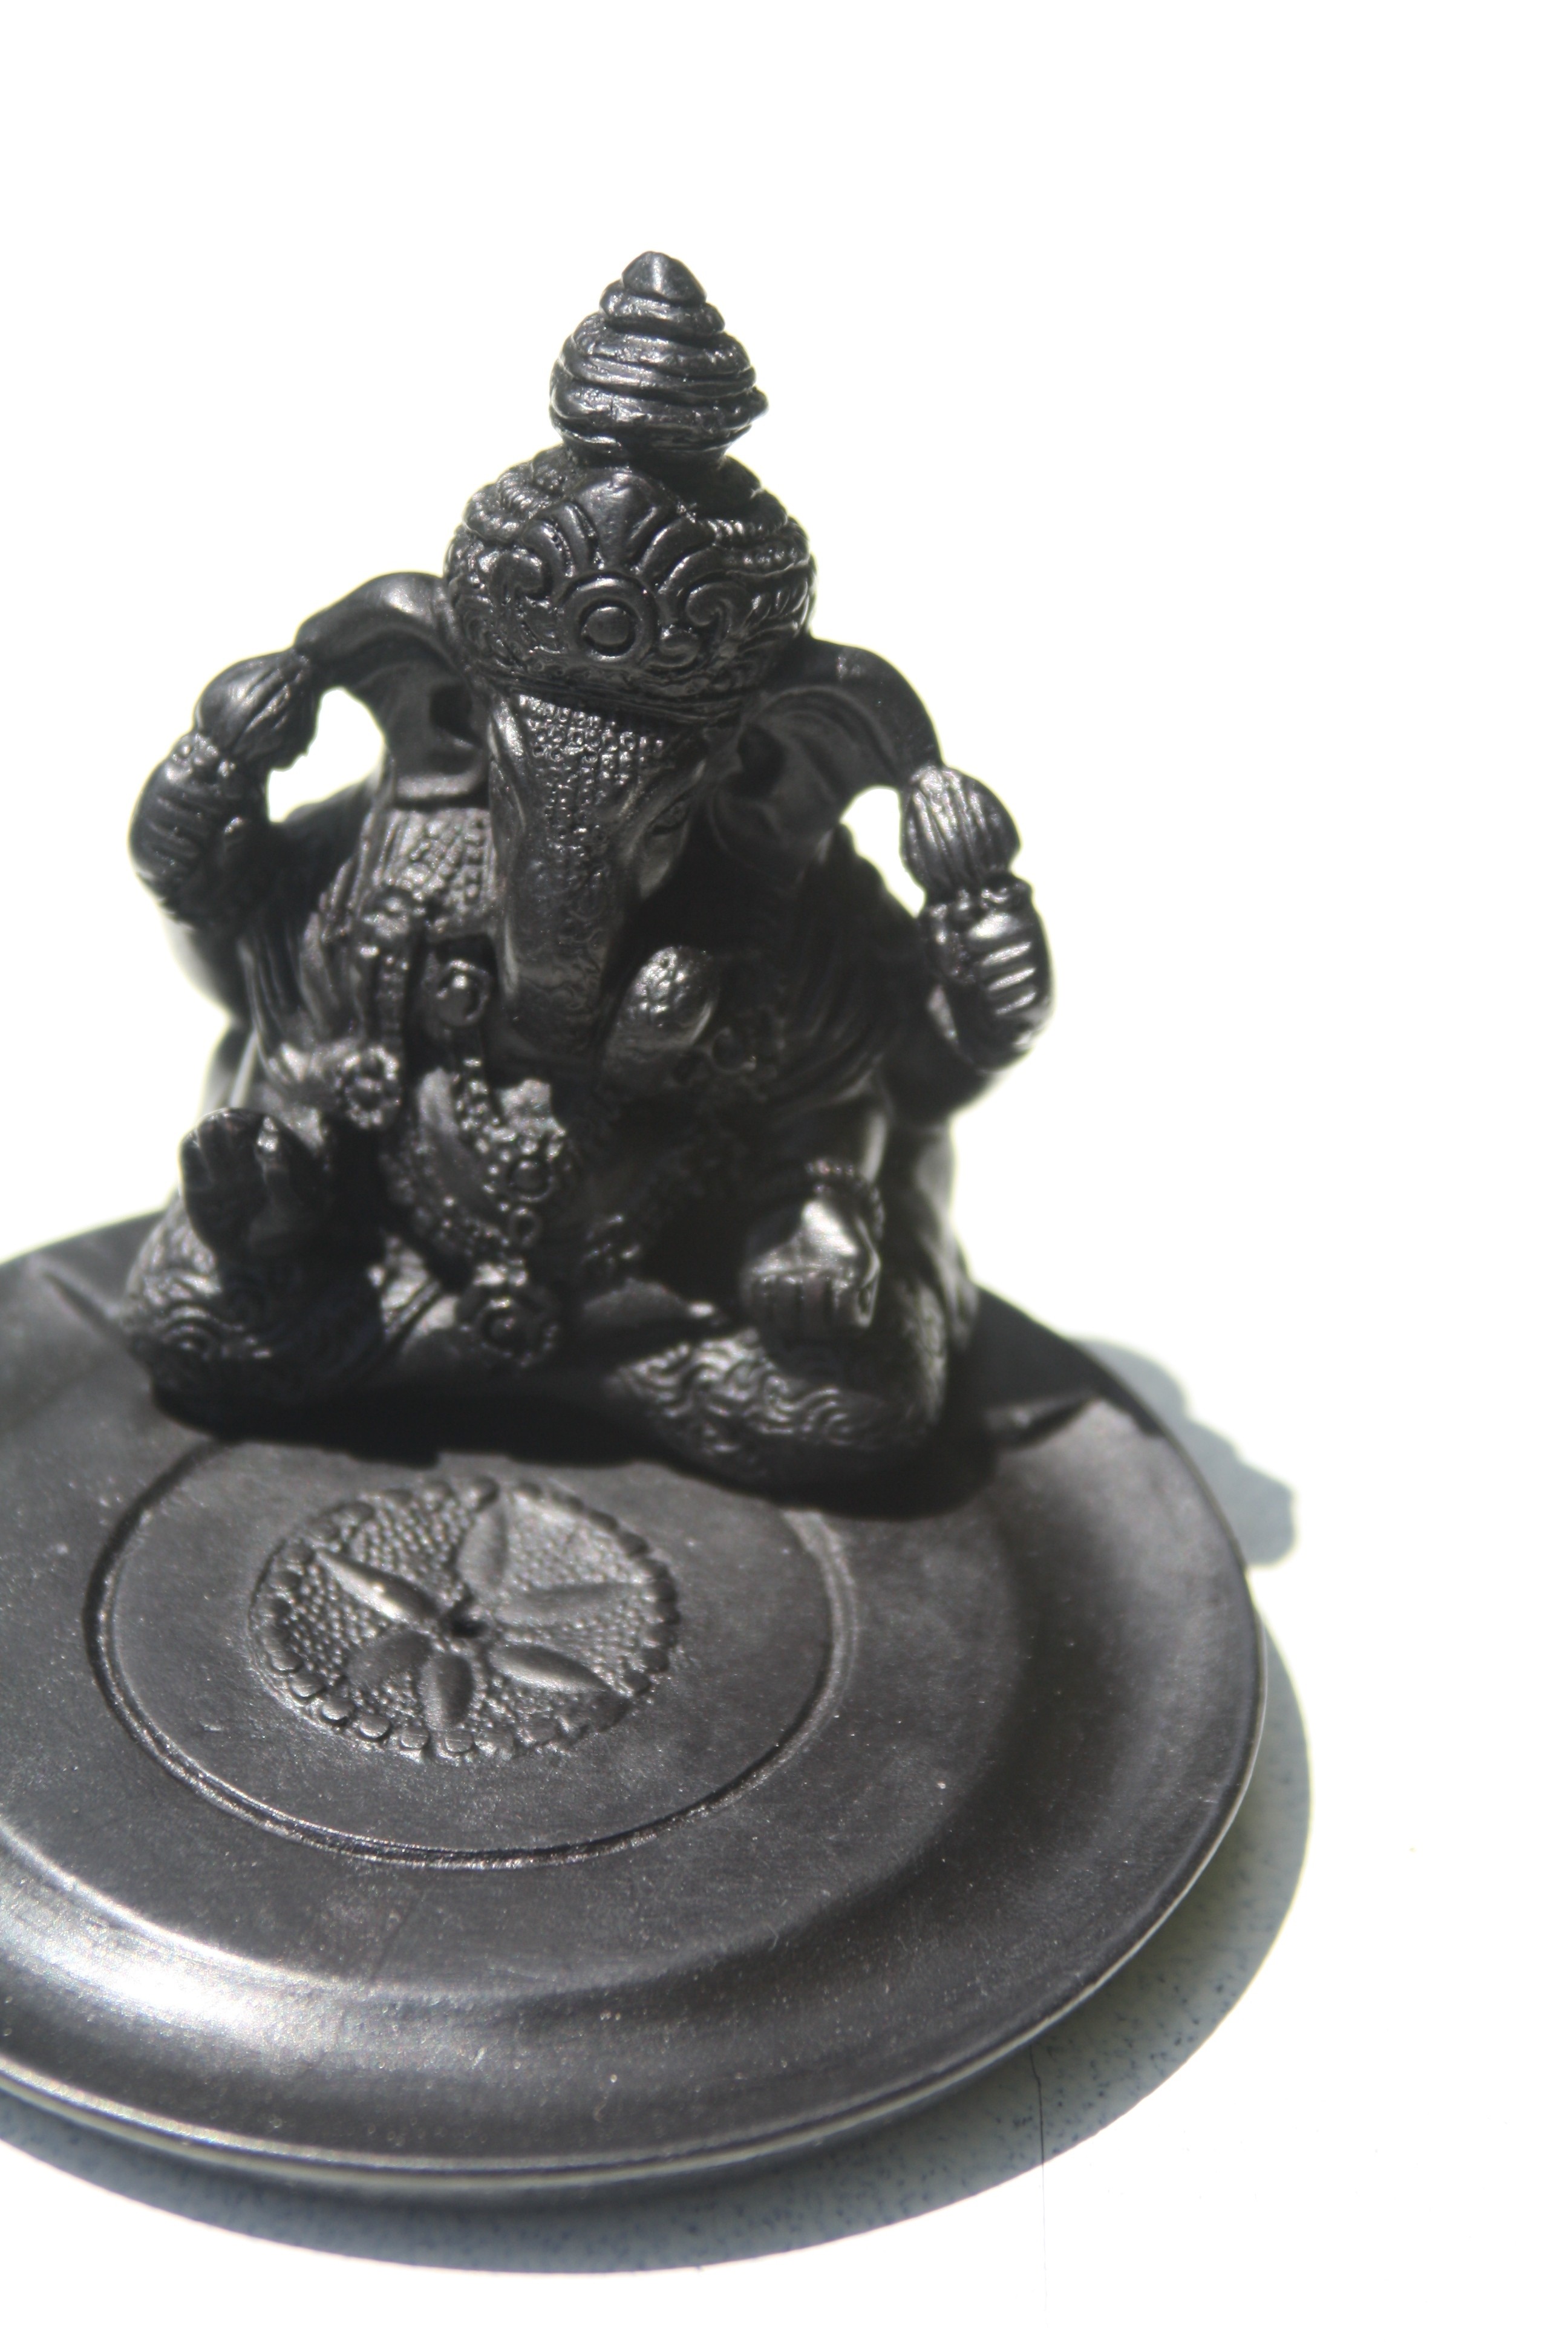 Ganesh Incense Holder